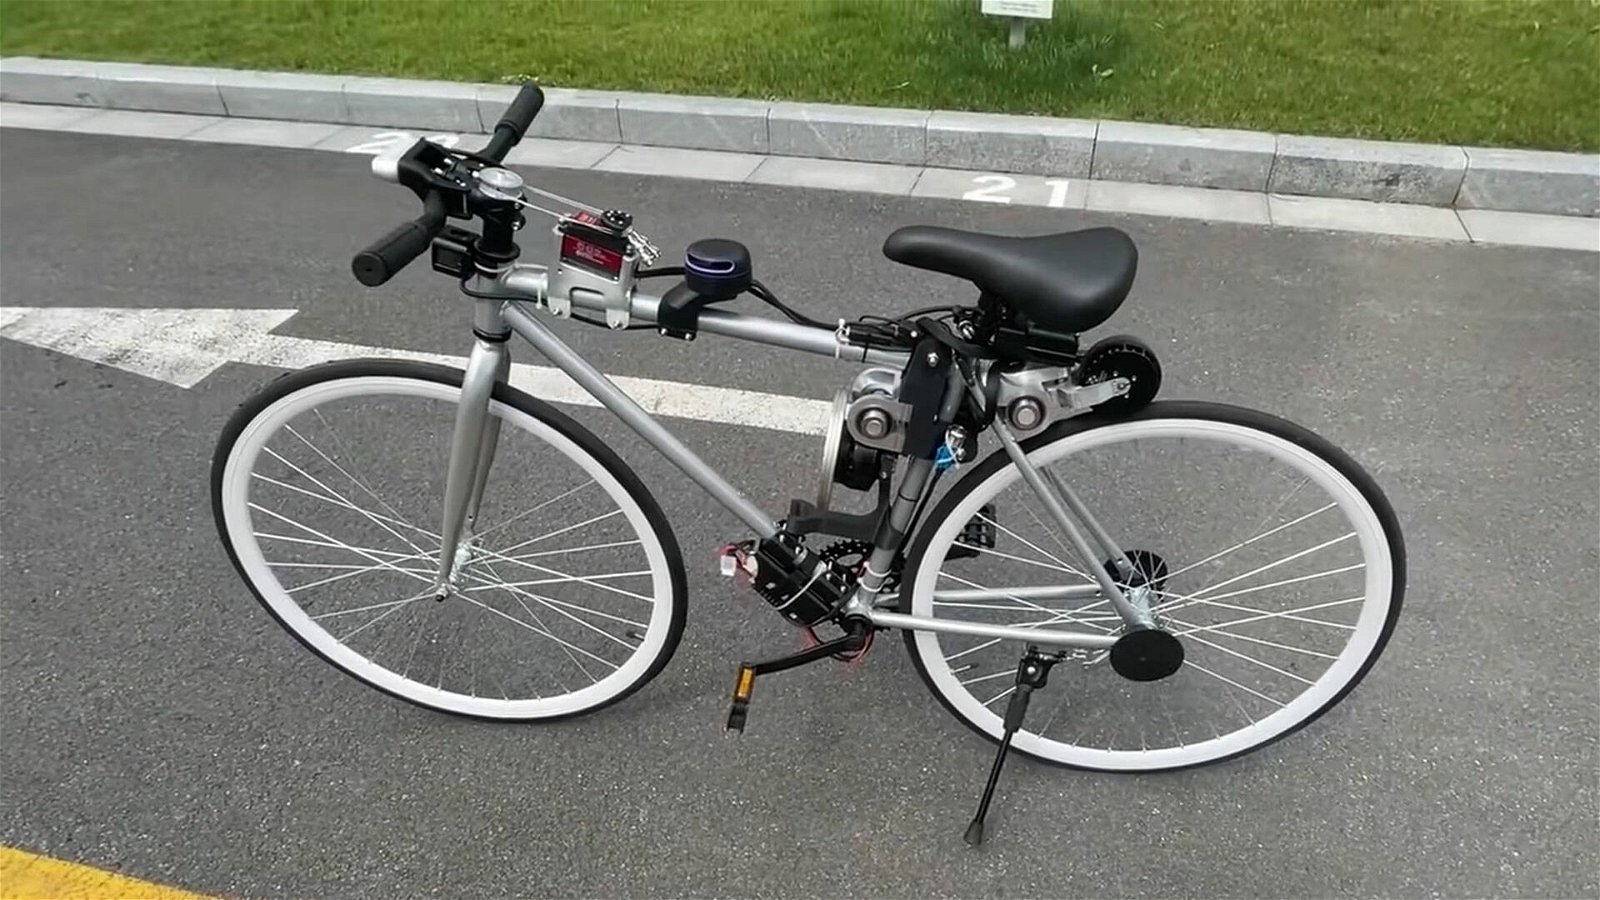 Immagine di Huawei a sorpresa: ecco una bicicletta a guida autonoma